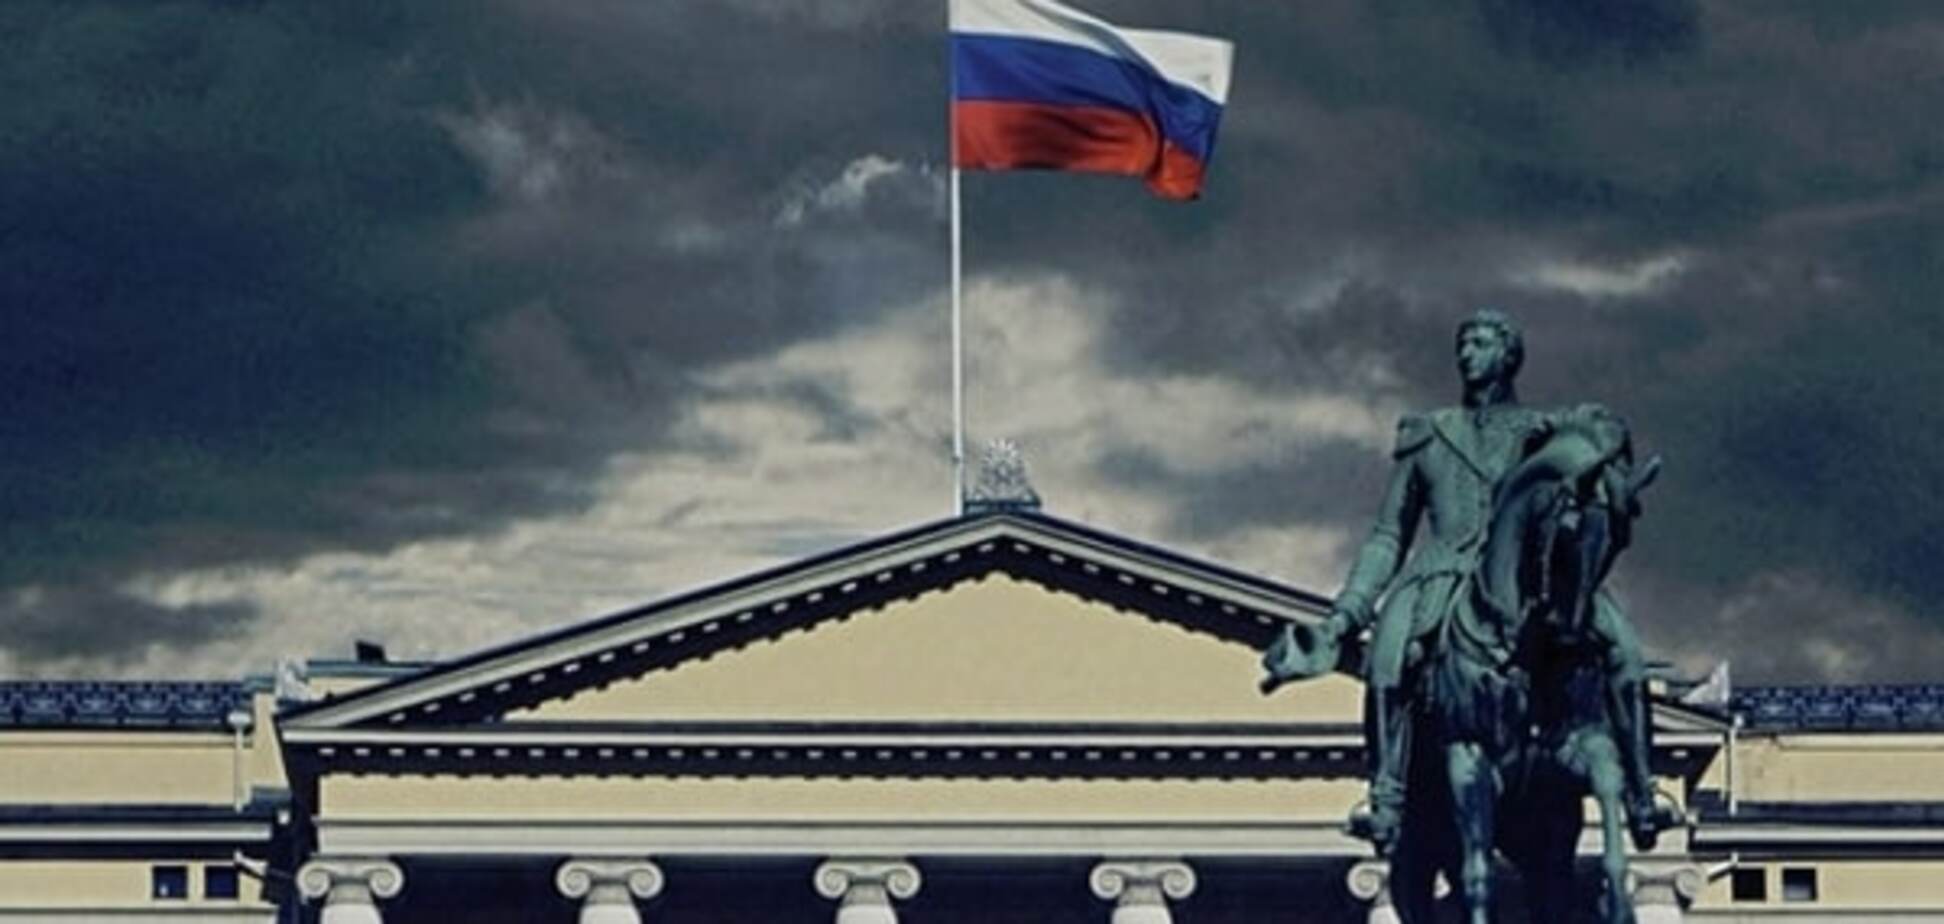 'Ми не окупанти': посольство Росії в Норвегії засмутилося через серіал 'Окуповані'